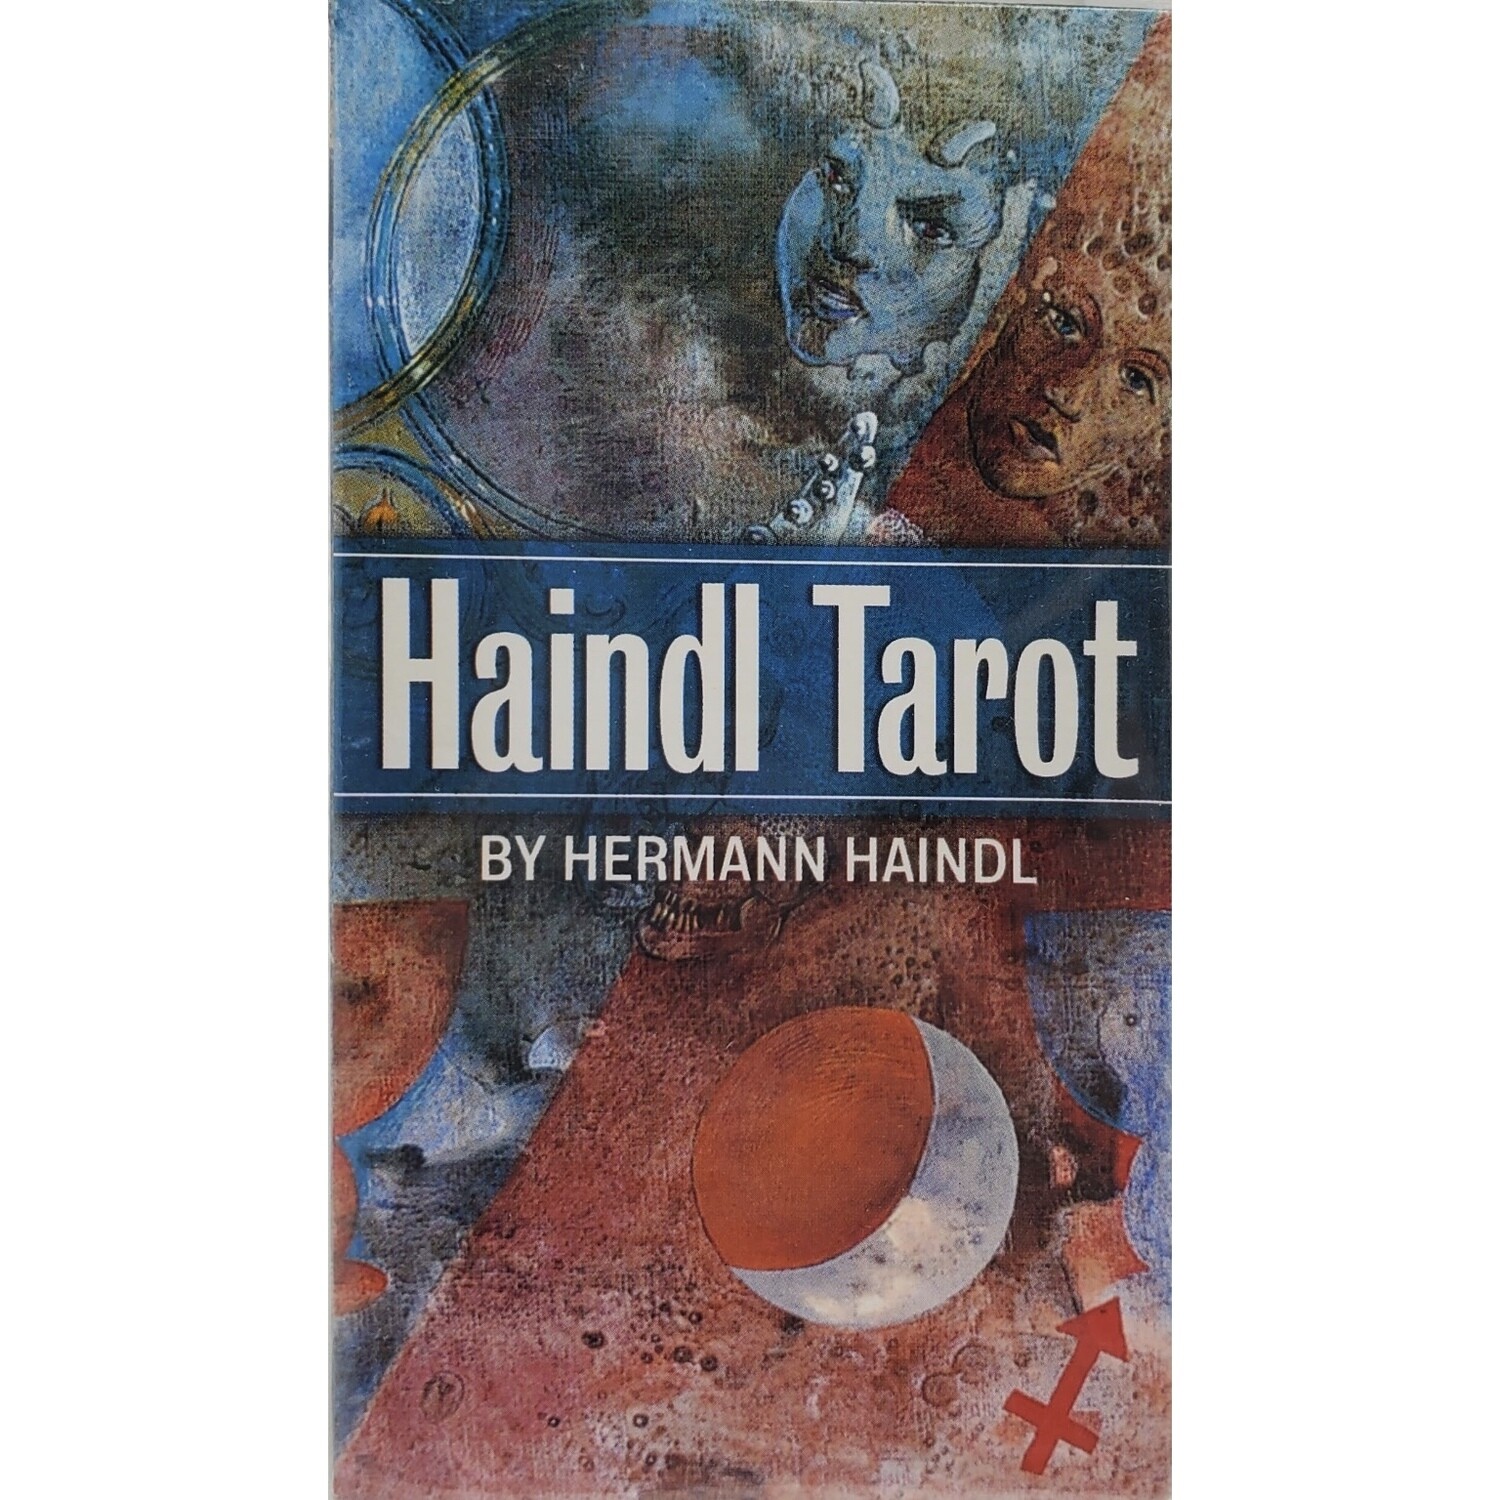 HAINDL TAROT